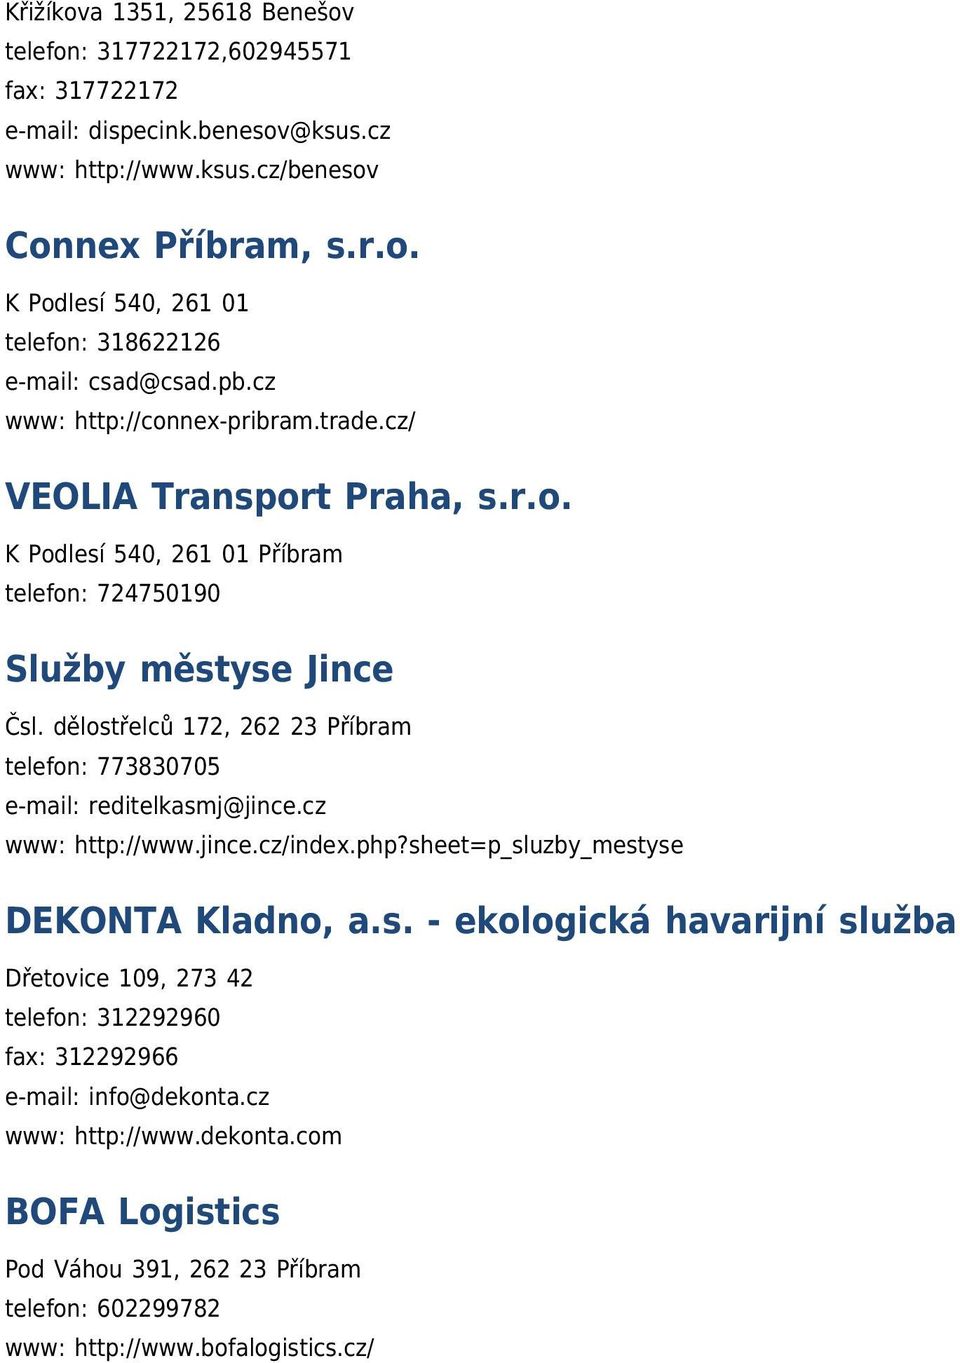 dělostřelců 172, 262 23 Příbram telefon: 773830705 e-mail: reditelkasmj@jince.cz www: http://www.jince.cz/index.php?sheet=p_sluzby_mestyse DEKONTA Kladno, a.s. - ekologická havarijní služba Dřetovice 109, 273 42 telefon: 312292960 fax: 312292966 e-mail: info@dekonta.